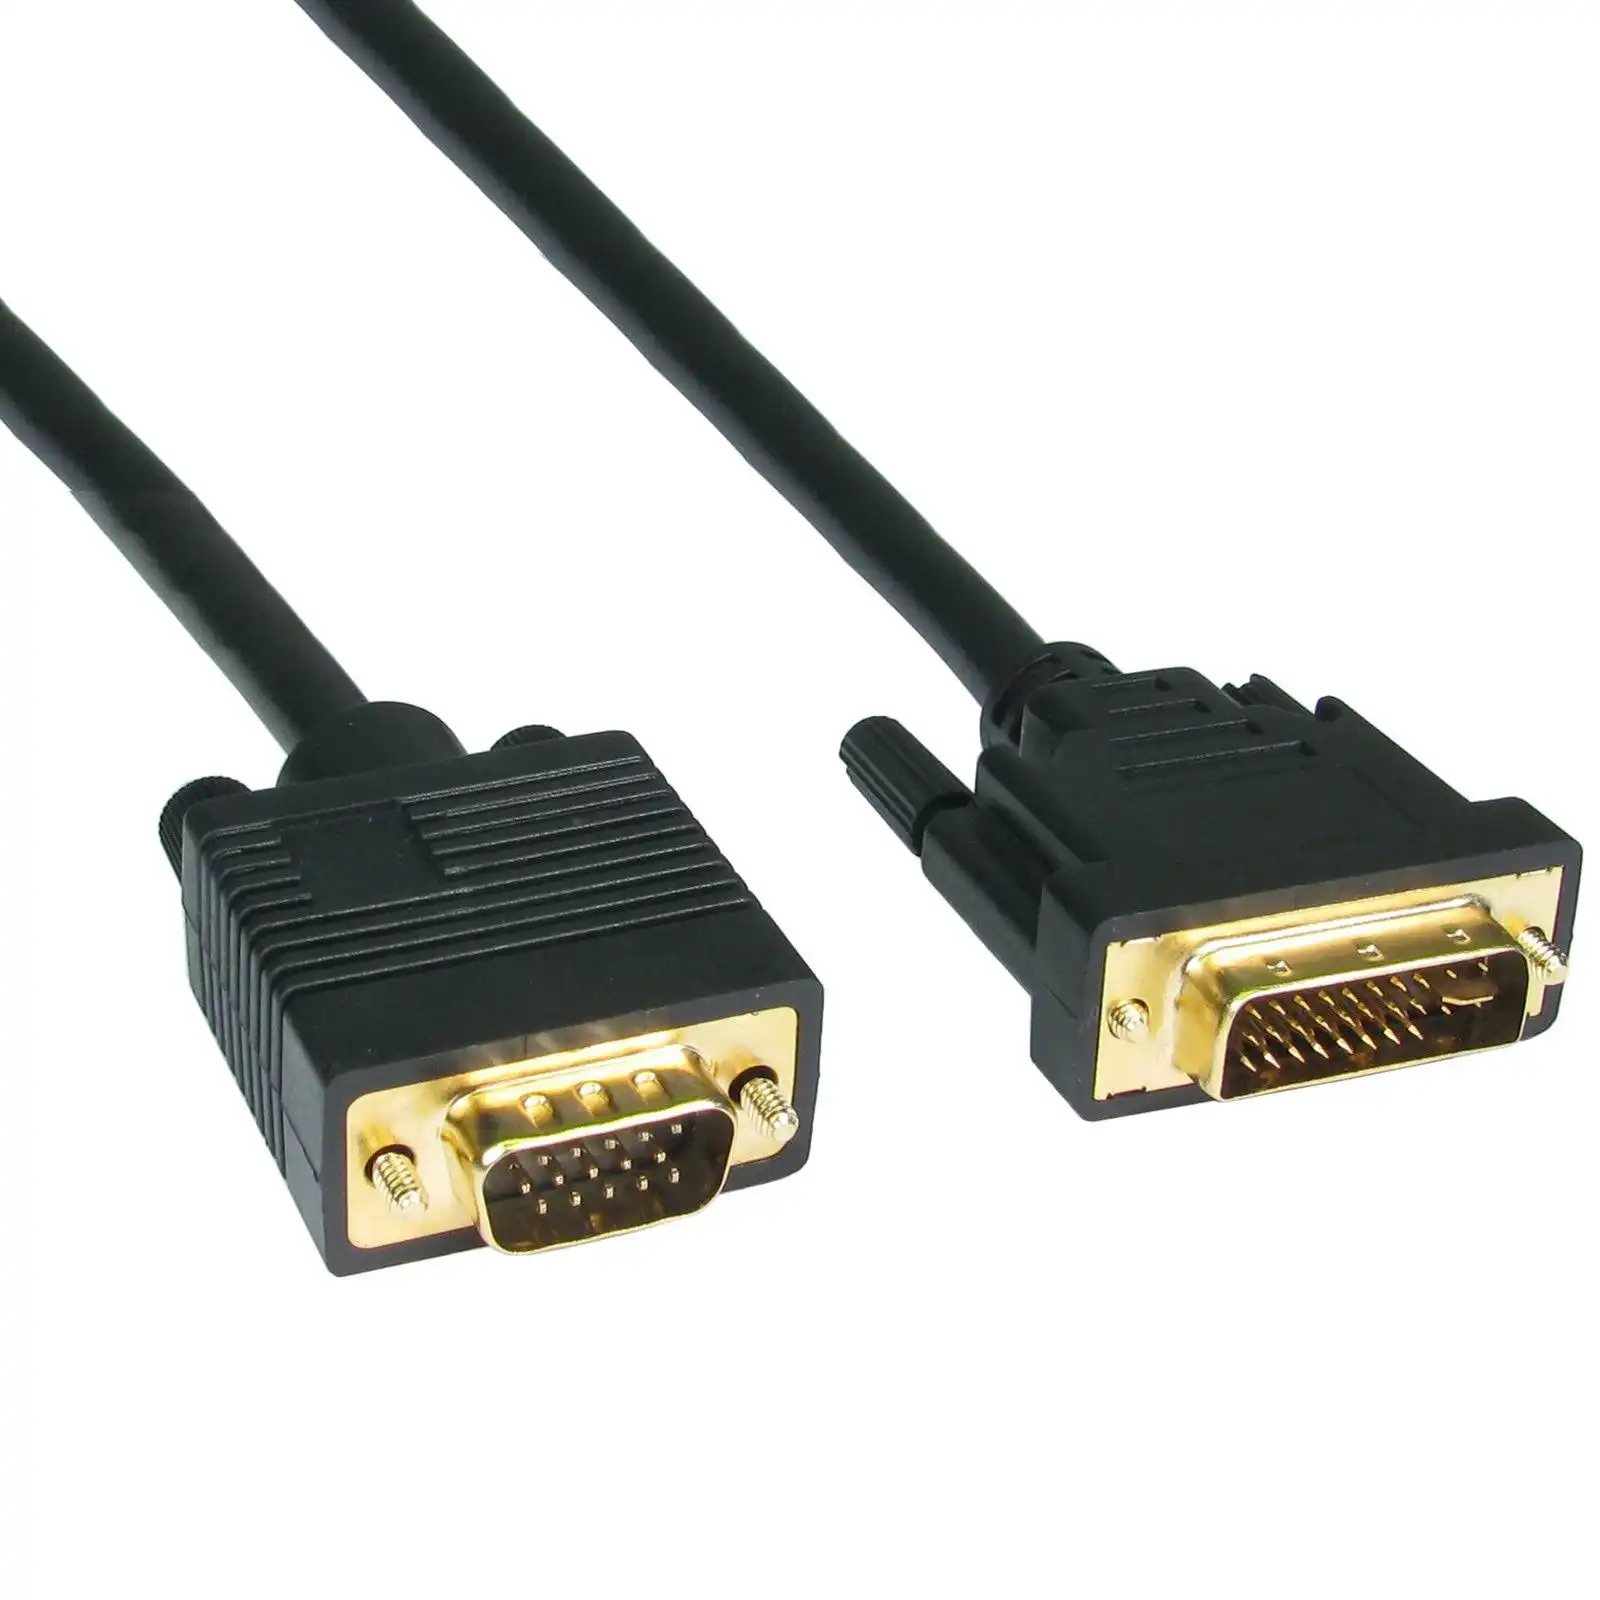 10M Dvi (24+5 Pin) To Vga (15 Pin) Cable Computer Monitor Cord Gold Plated